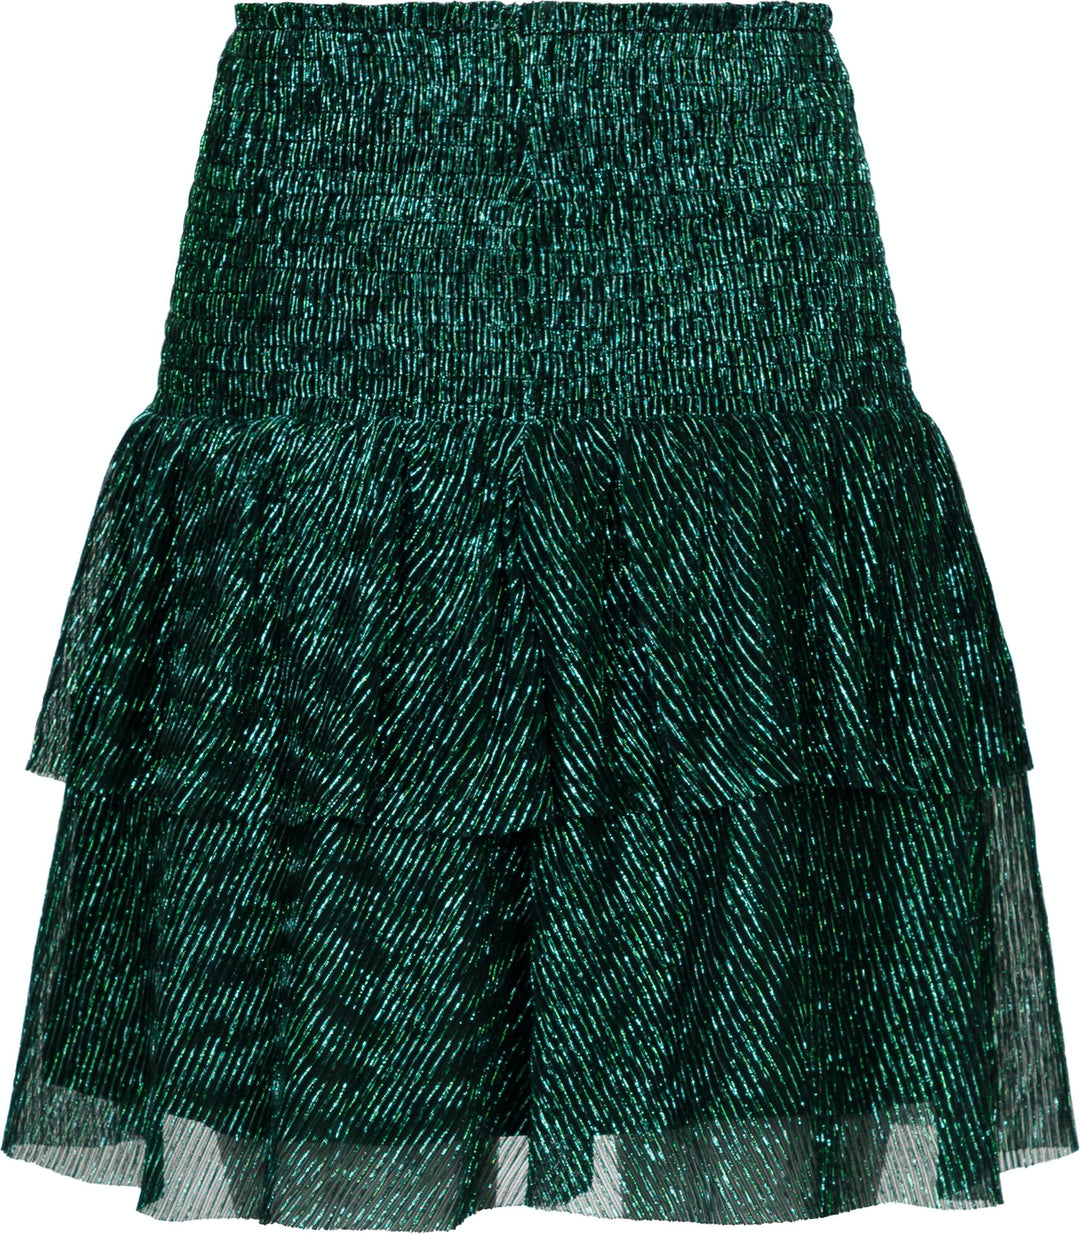 Neo Noir - Carin Glitz Skirt - Green